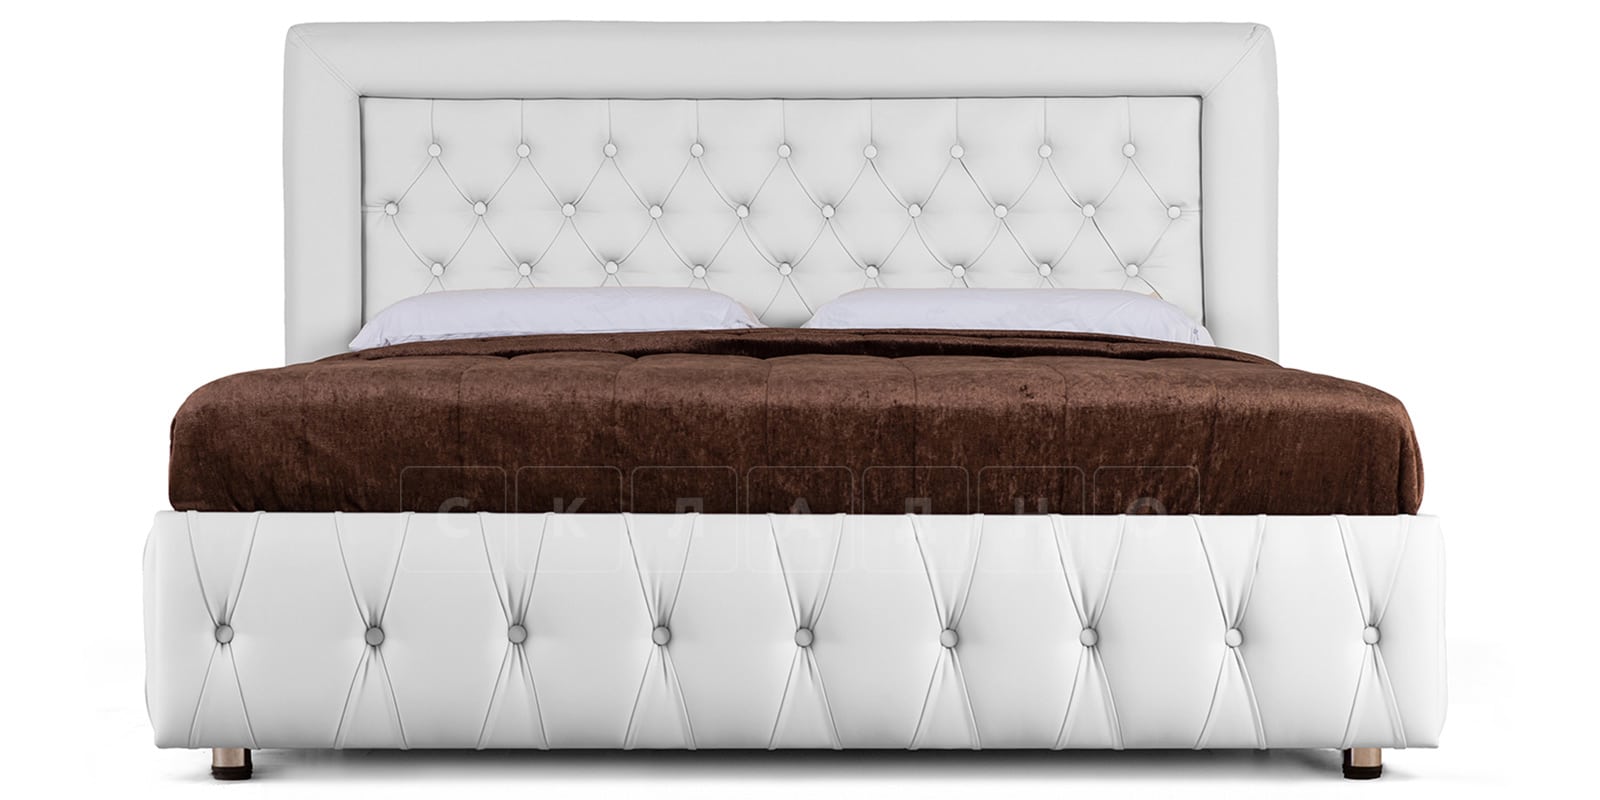 Мягкая кровать Малибу 160см экокожа белого цвета вариант 7 фото 2 | интернет-магазин Складно